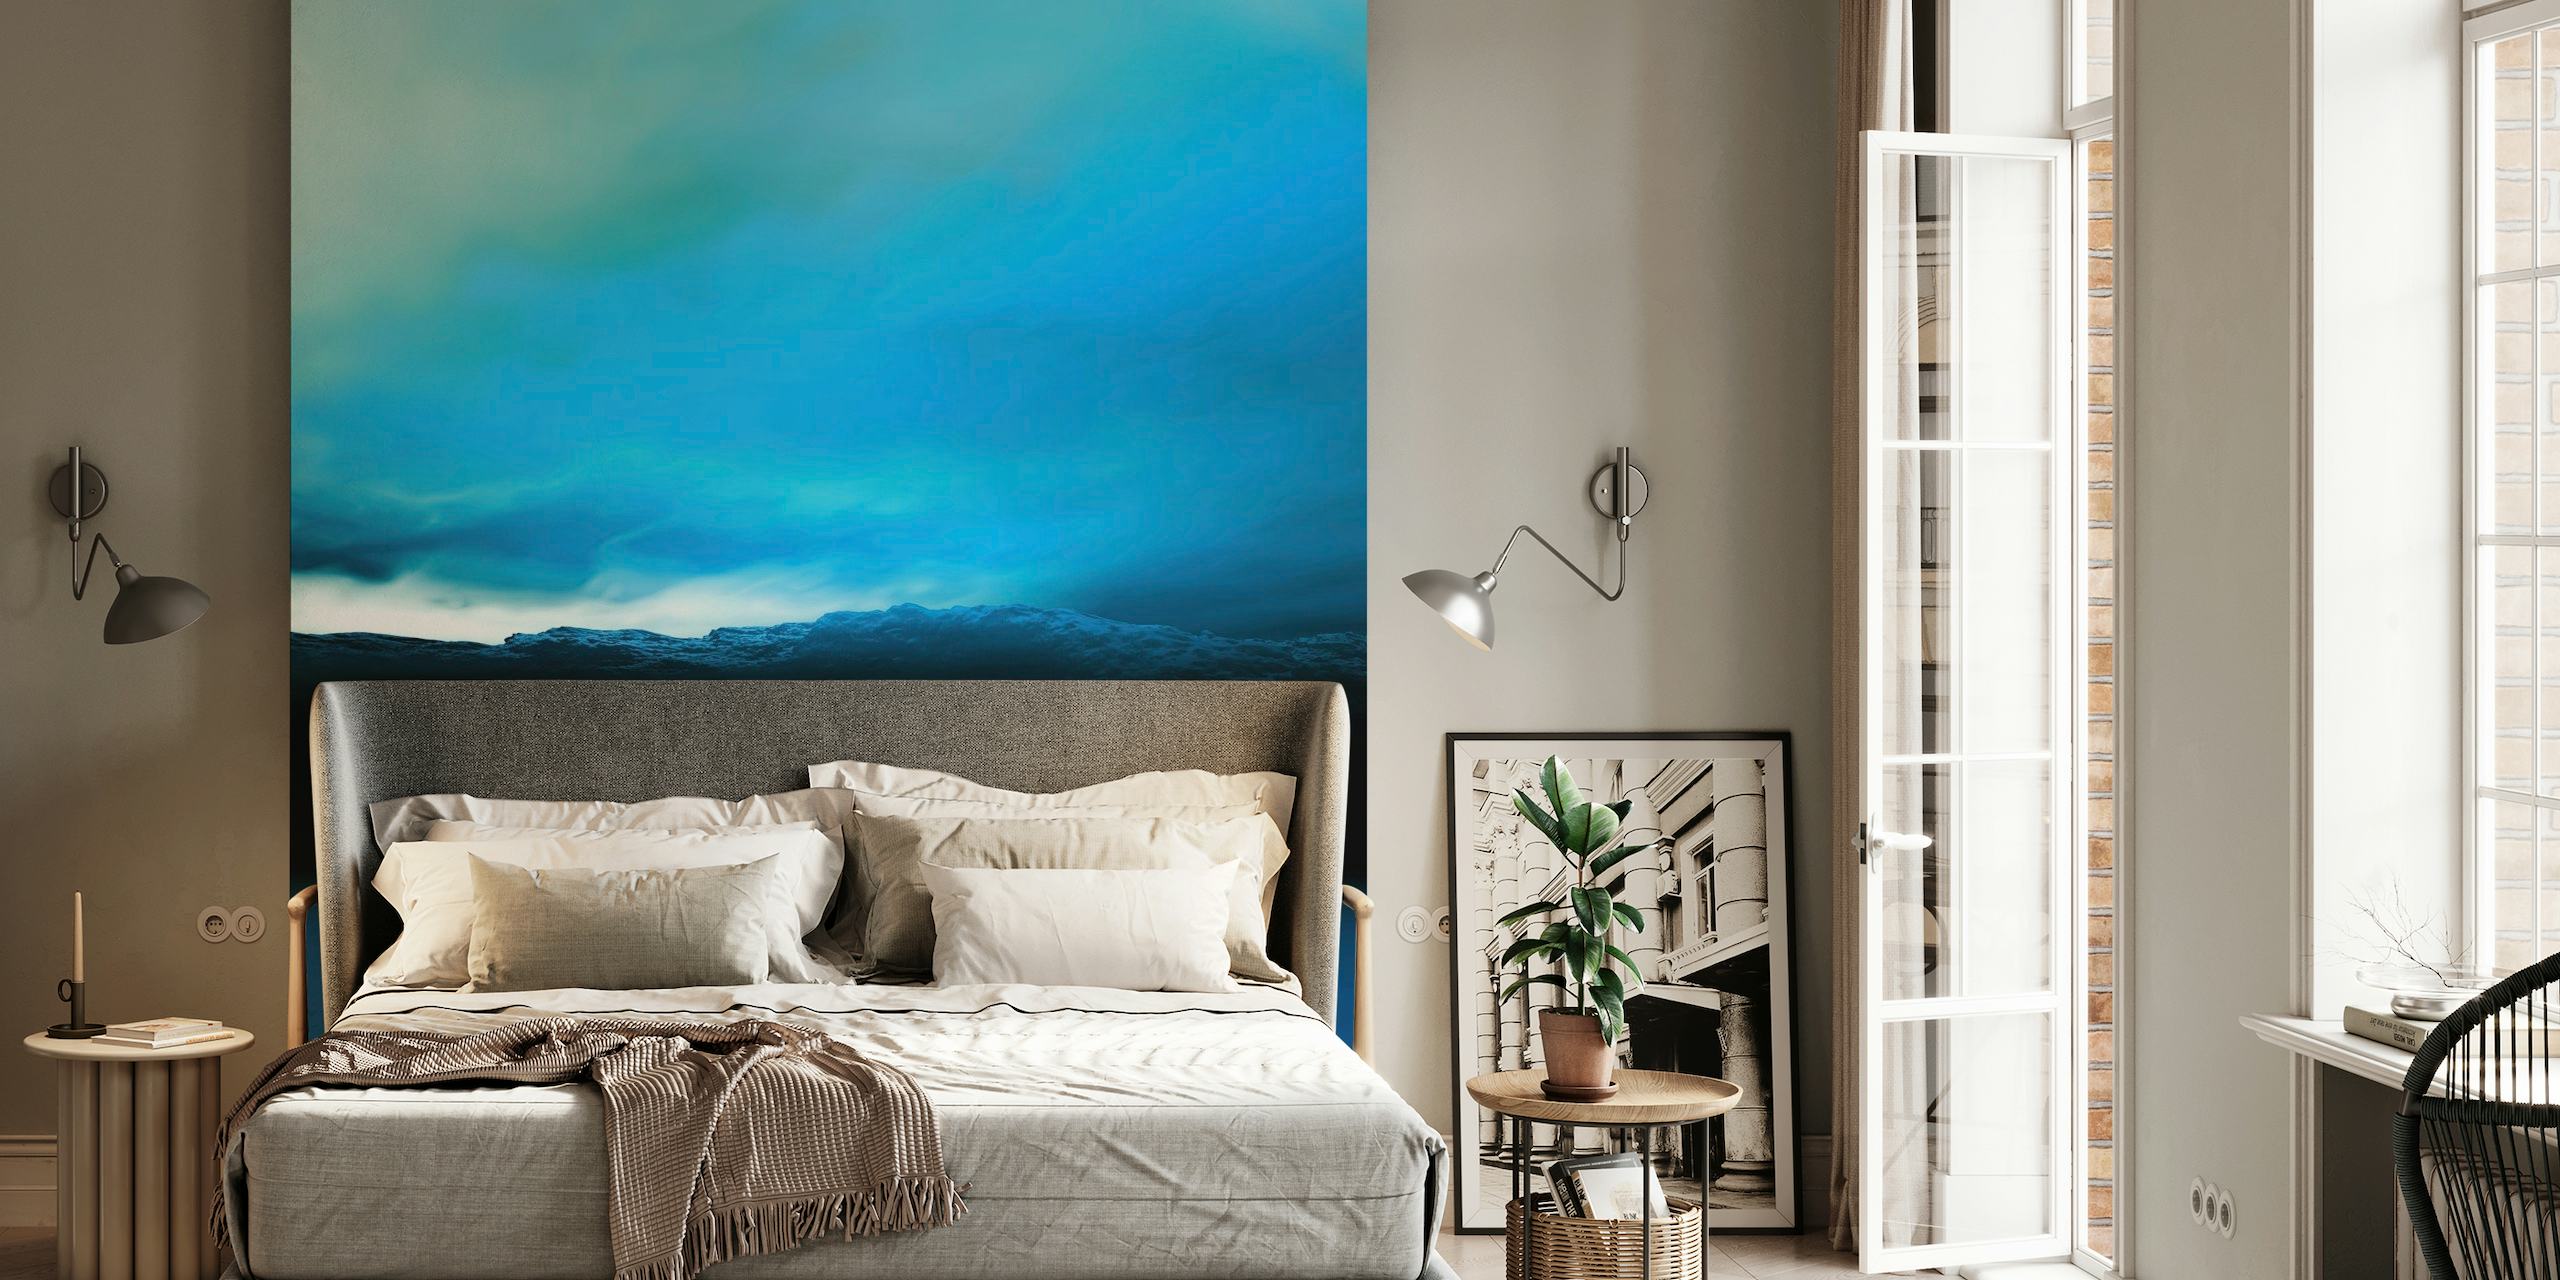 Blålig solnedgang vægmaleri med rolige blå toner og mørke landskabssilhuetter